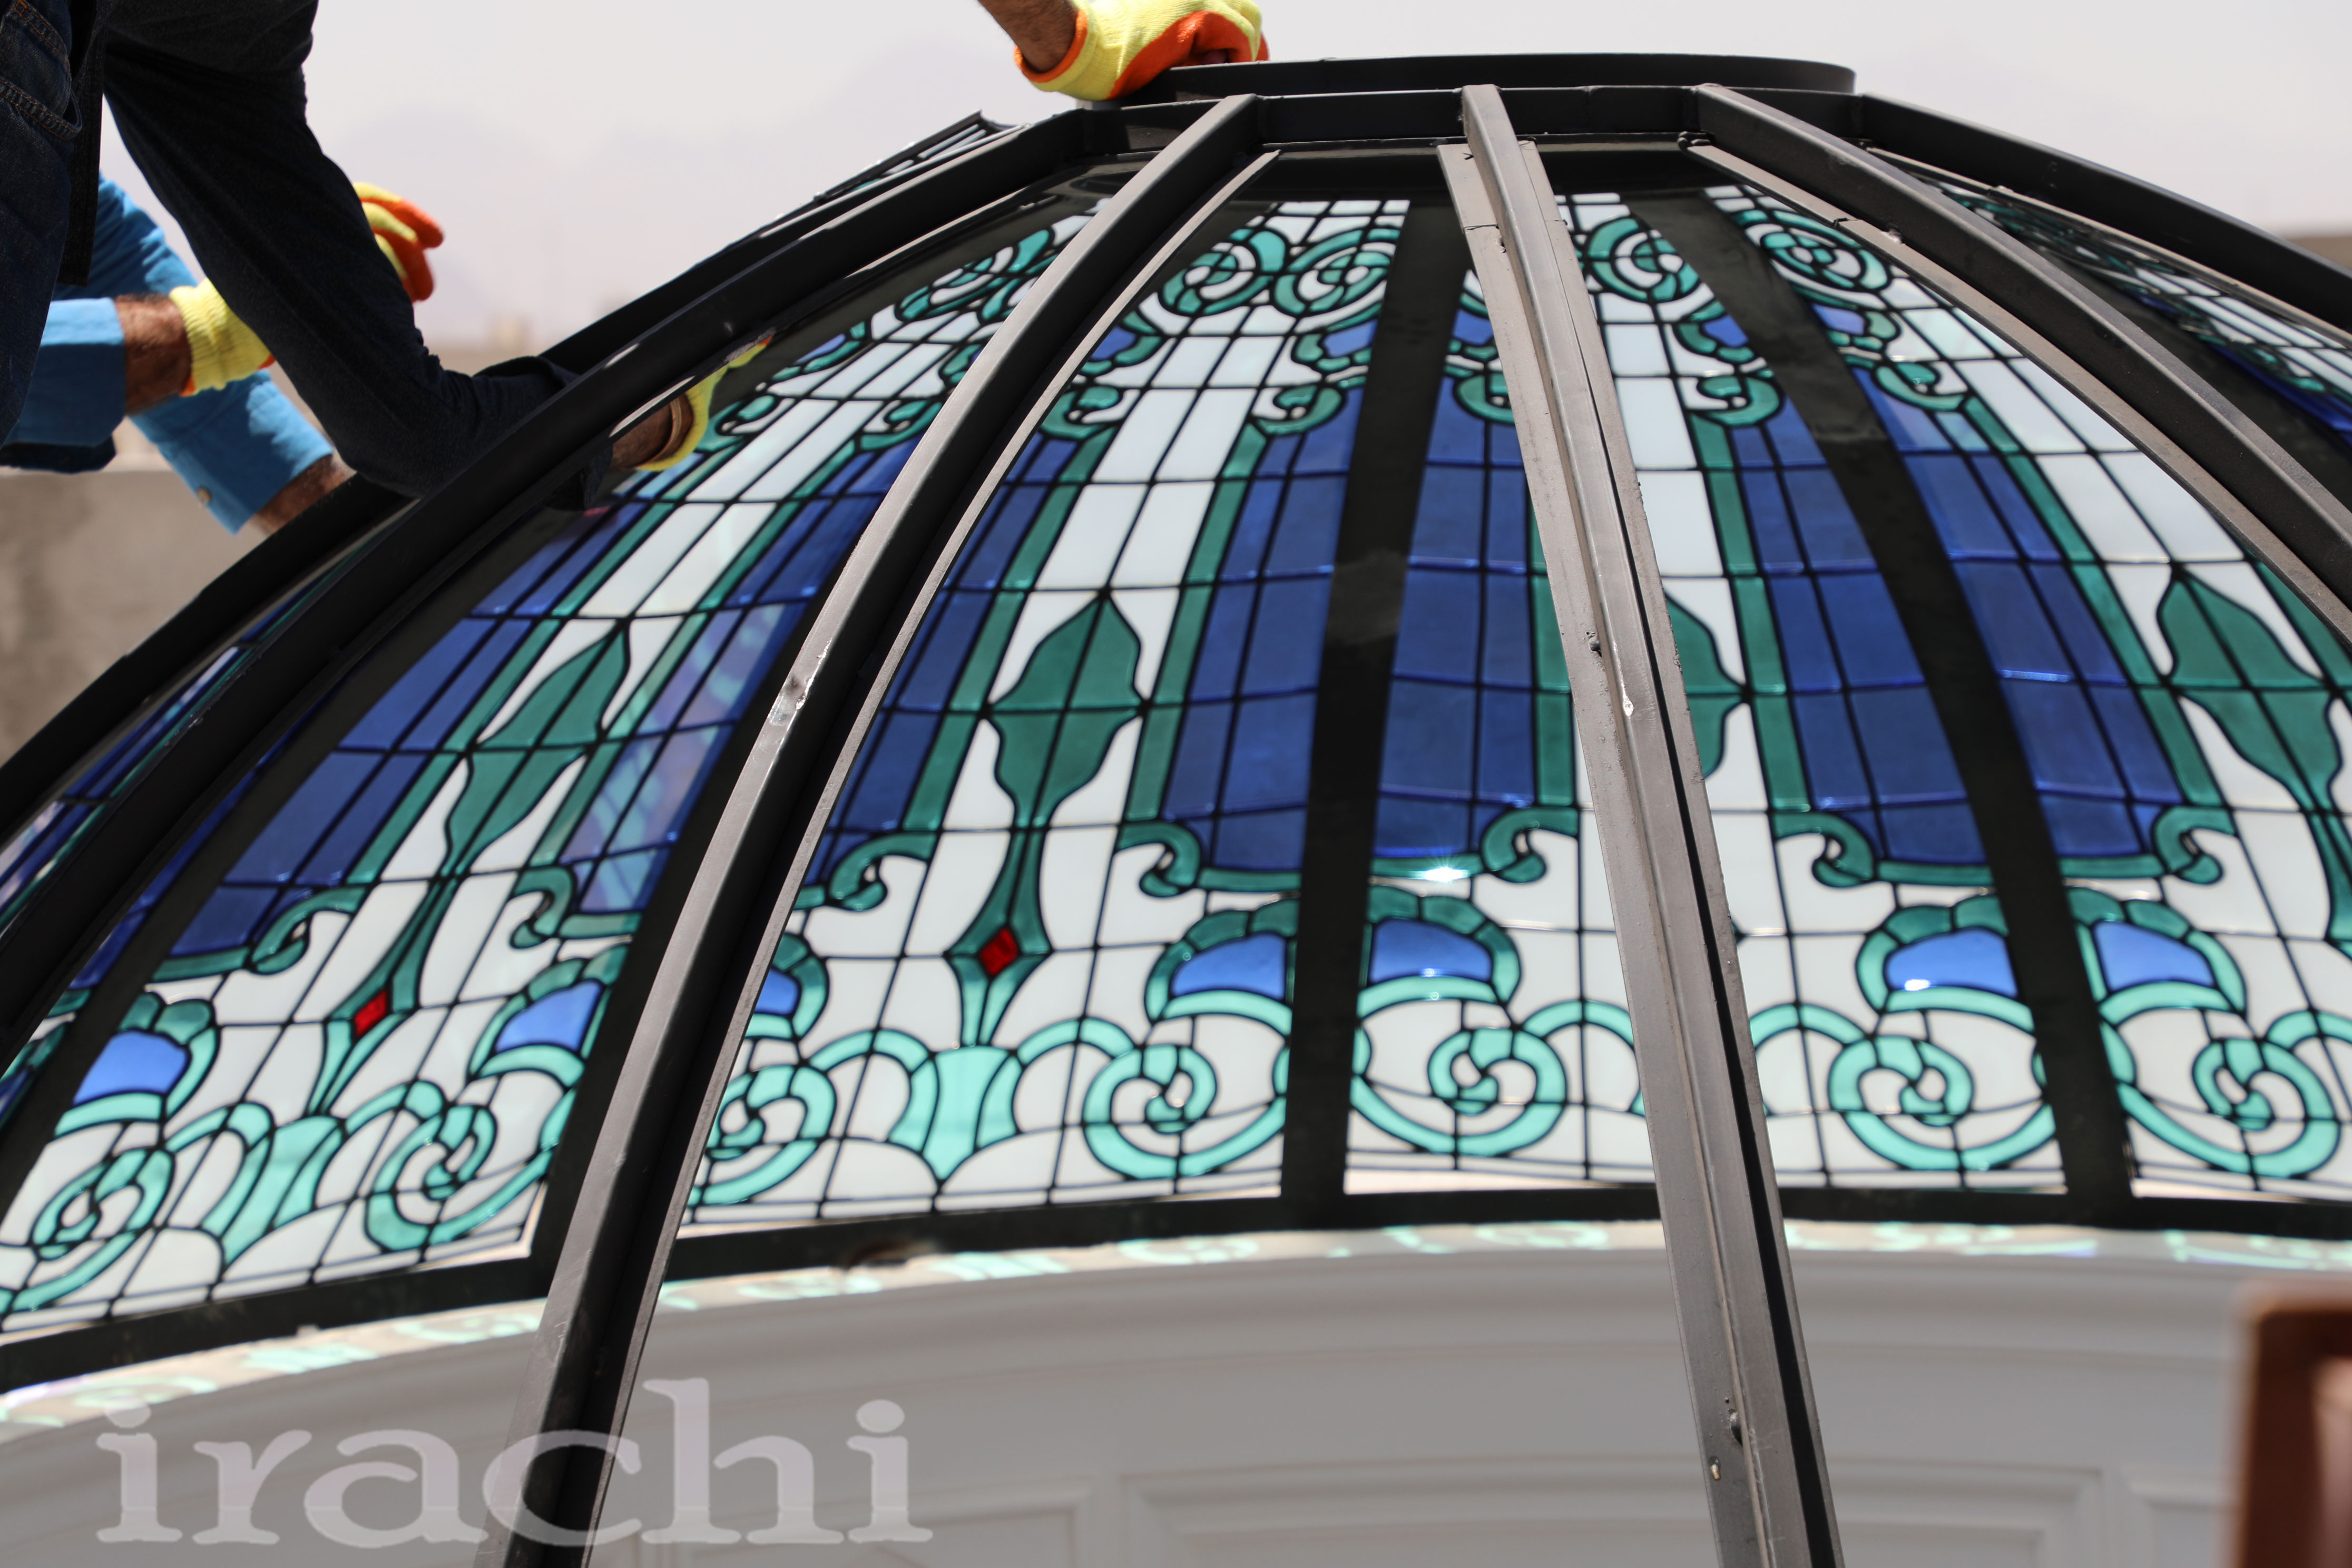 گنبد شیشه ای استین گلاس در ساختمان ویلایی یزد